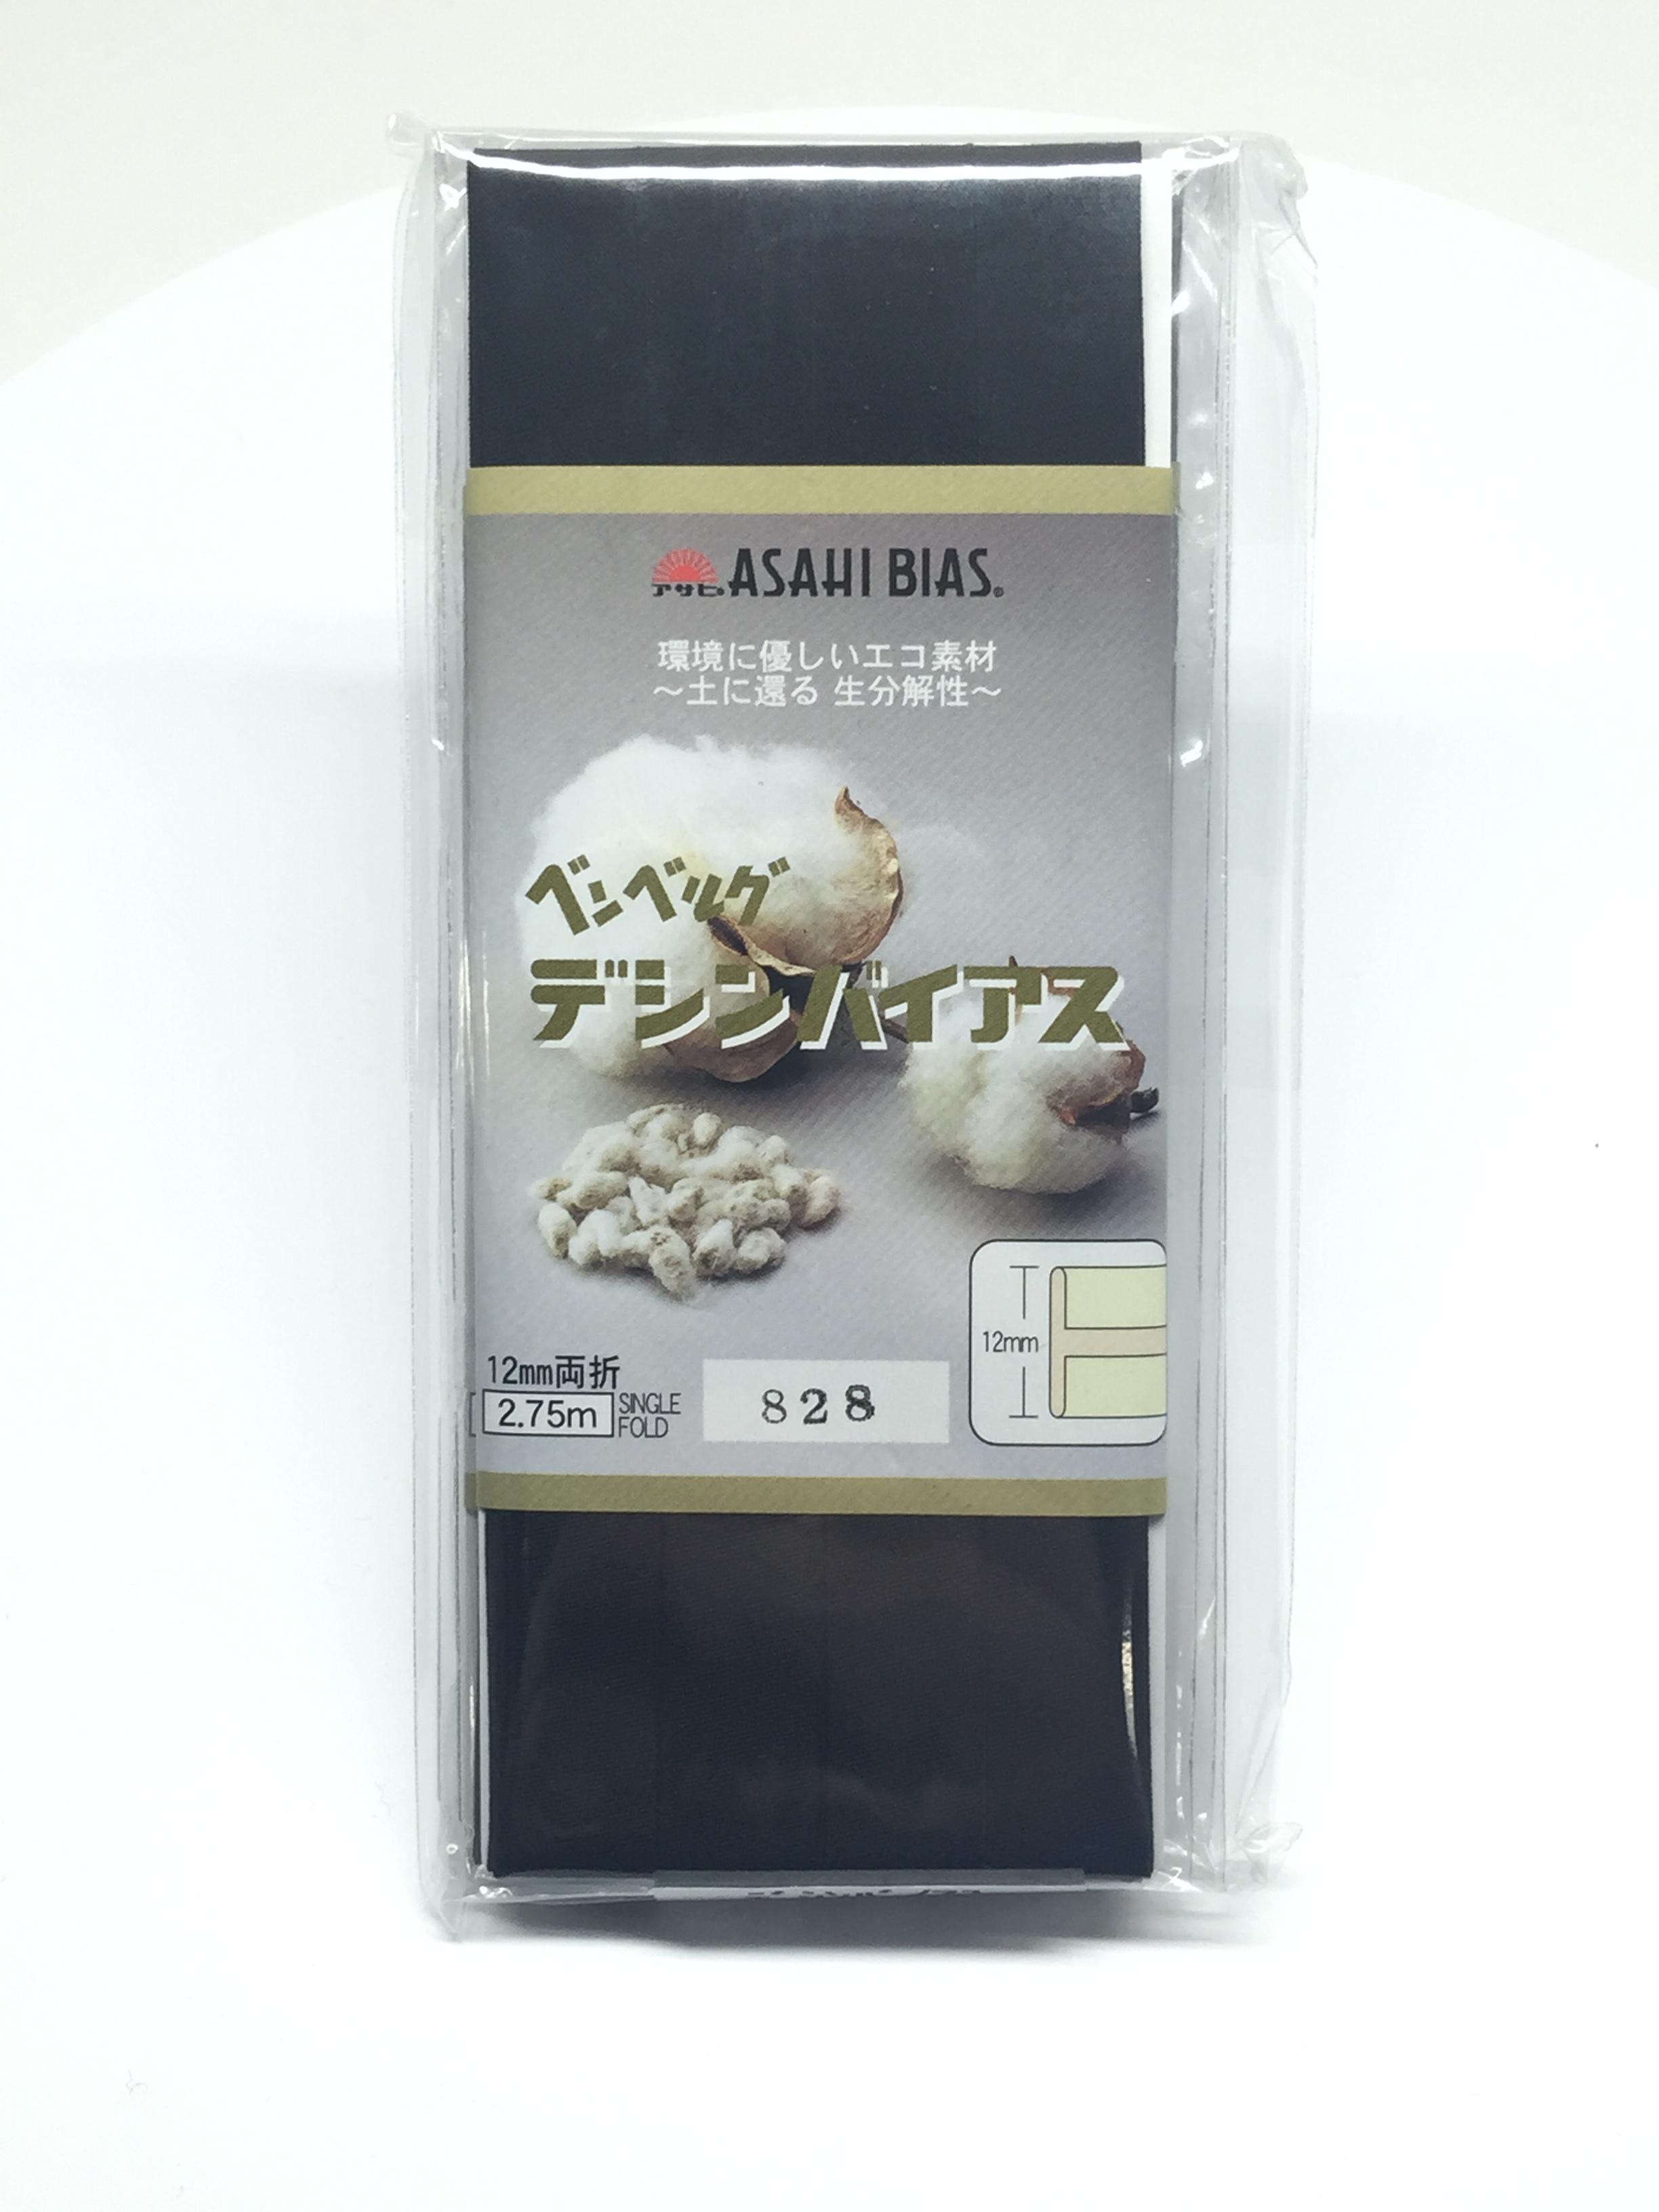 デシンバイアス(家庭用) Decin Bias Tape (Double Fold Type For Home Use)[Ribbon Tape Cord] Asahi Bias(Watanabe Fabric Industry)